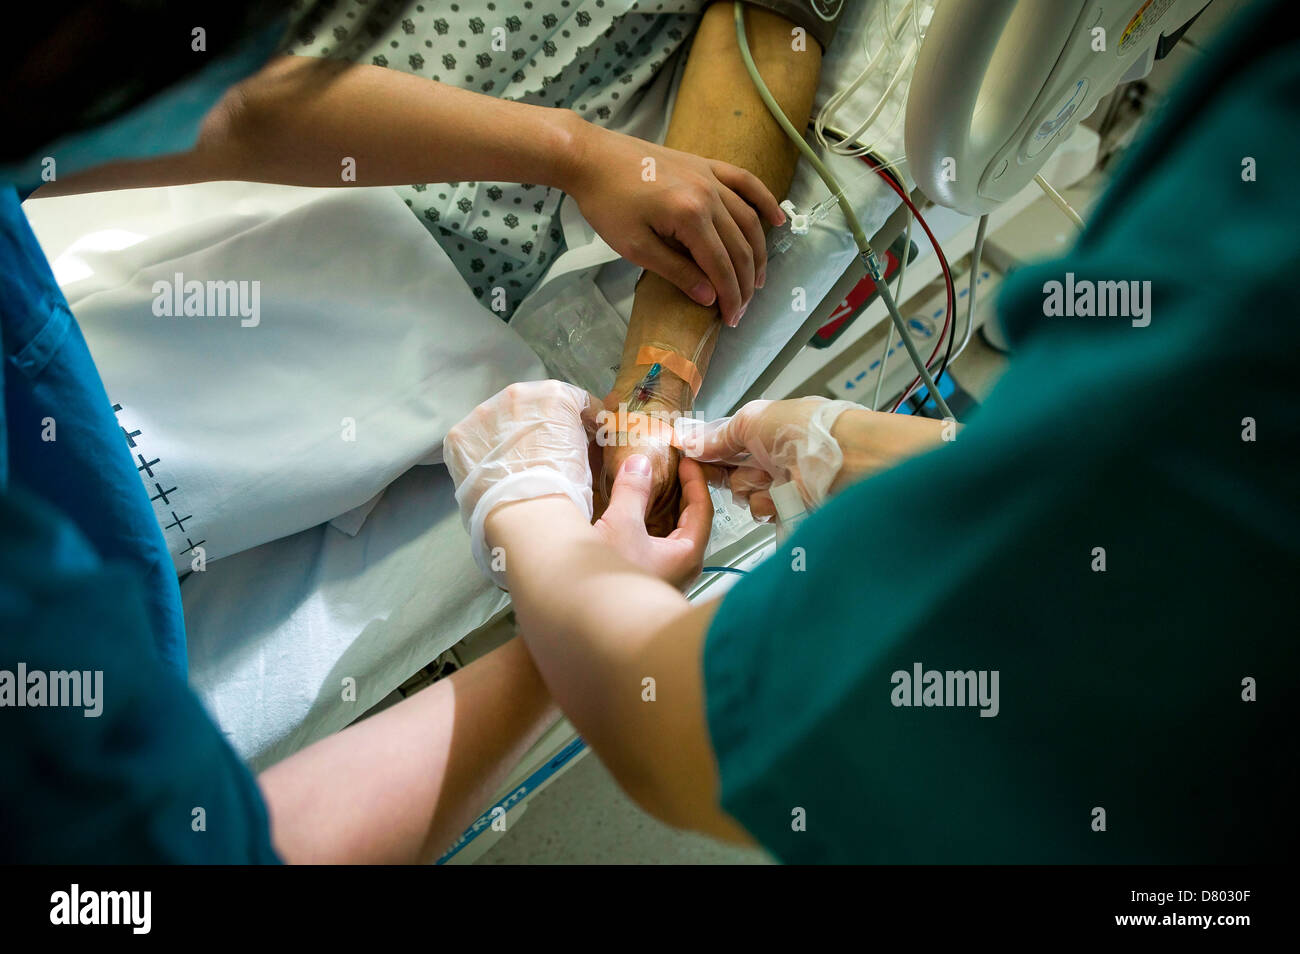 Un paciente tiene un gotero intravenoso insertado en el brazo, en una unidad de cuidados intensivos. Foto de stock